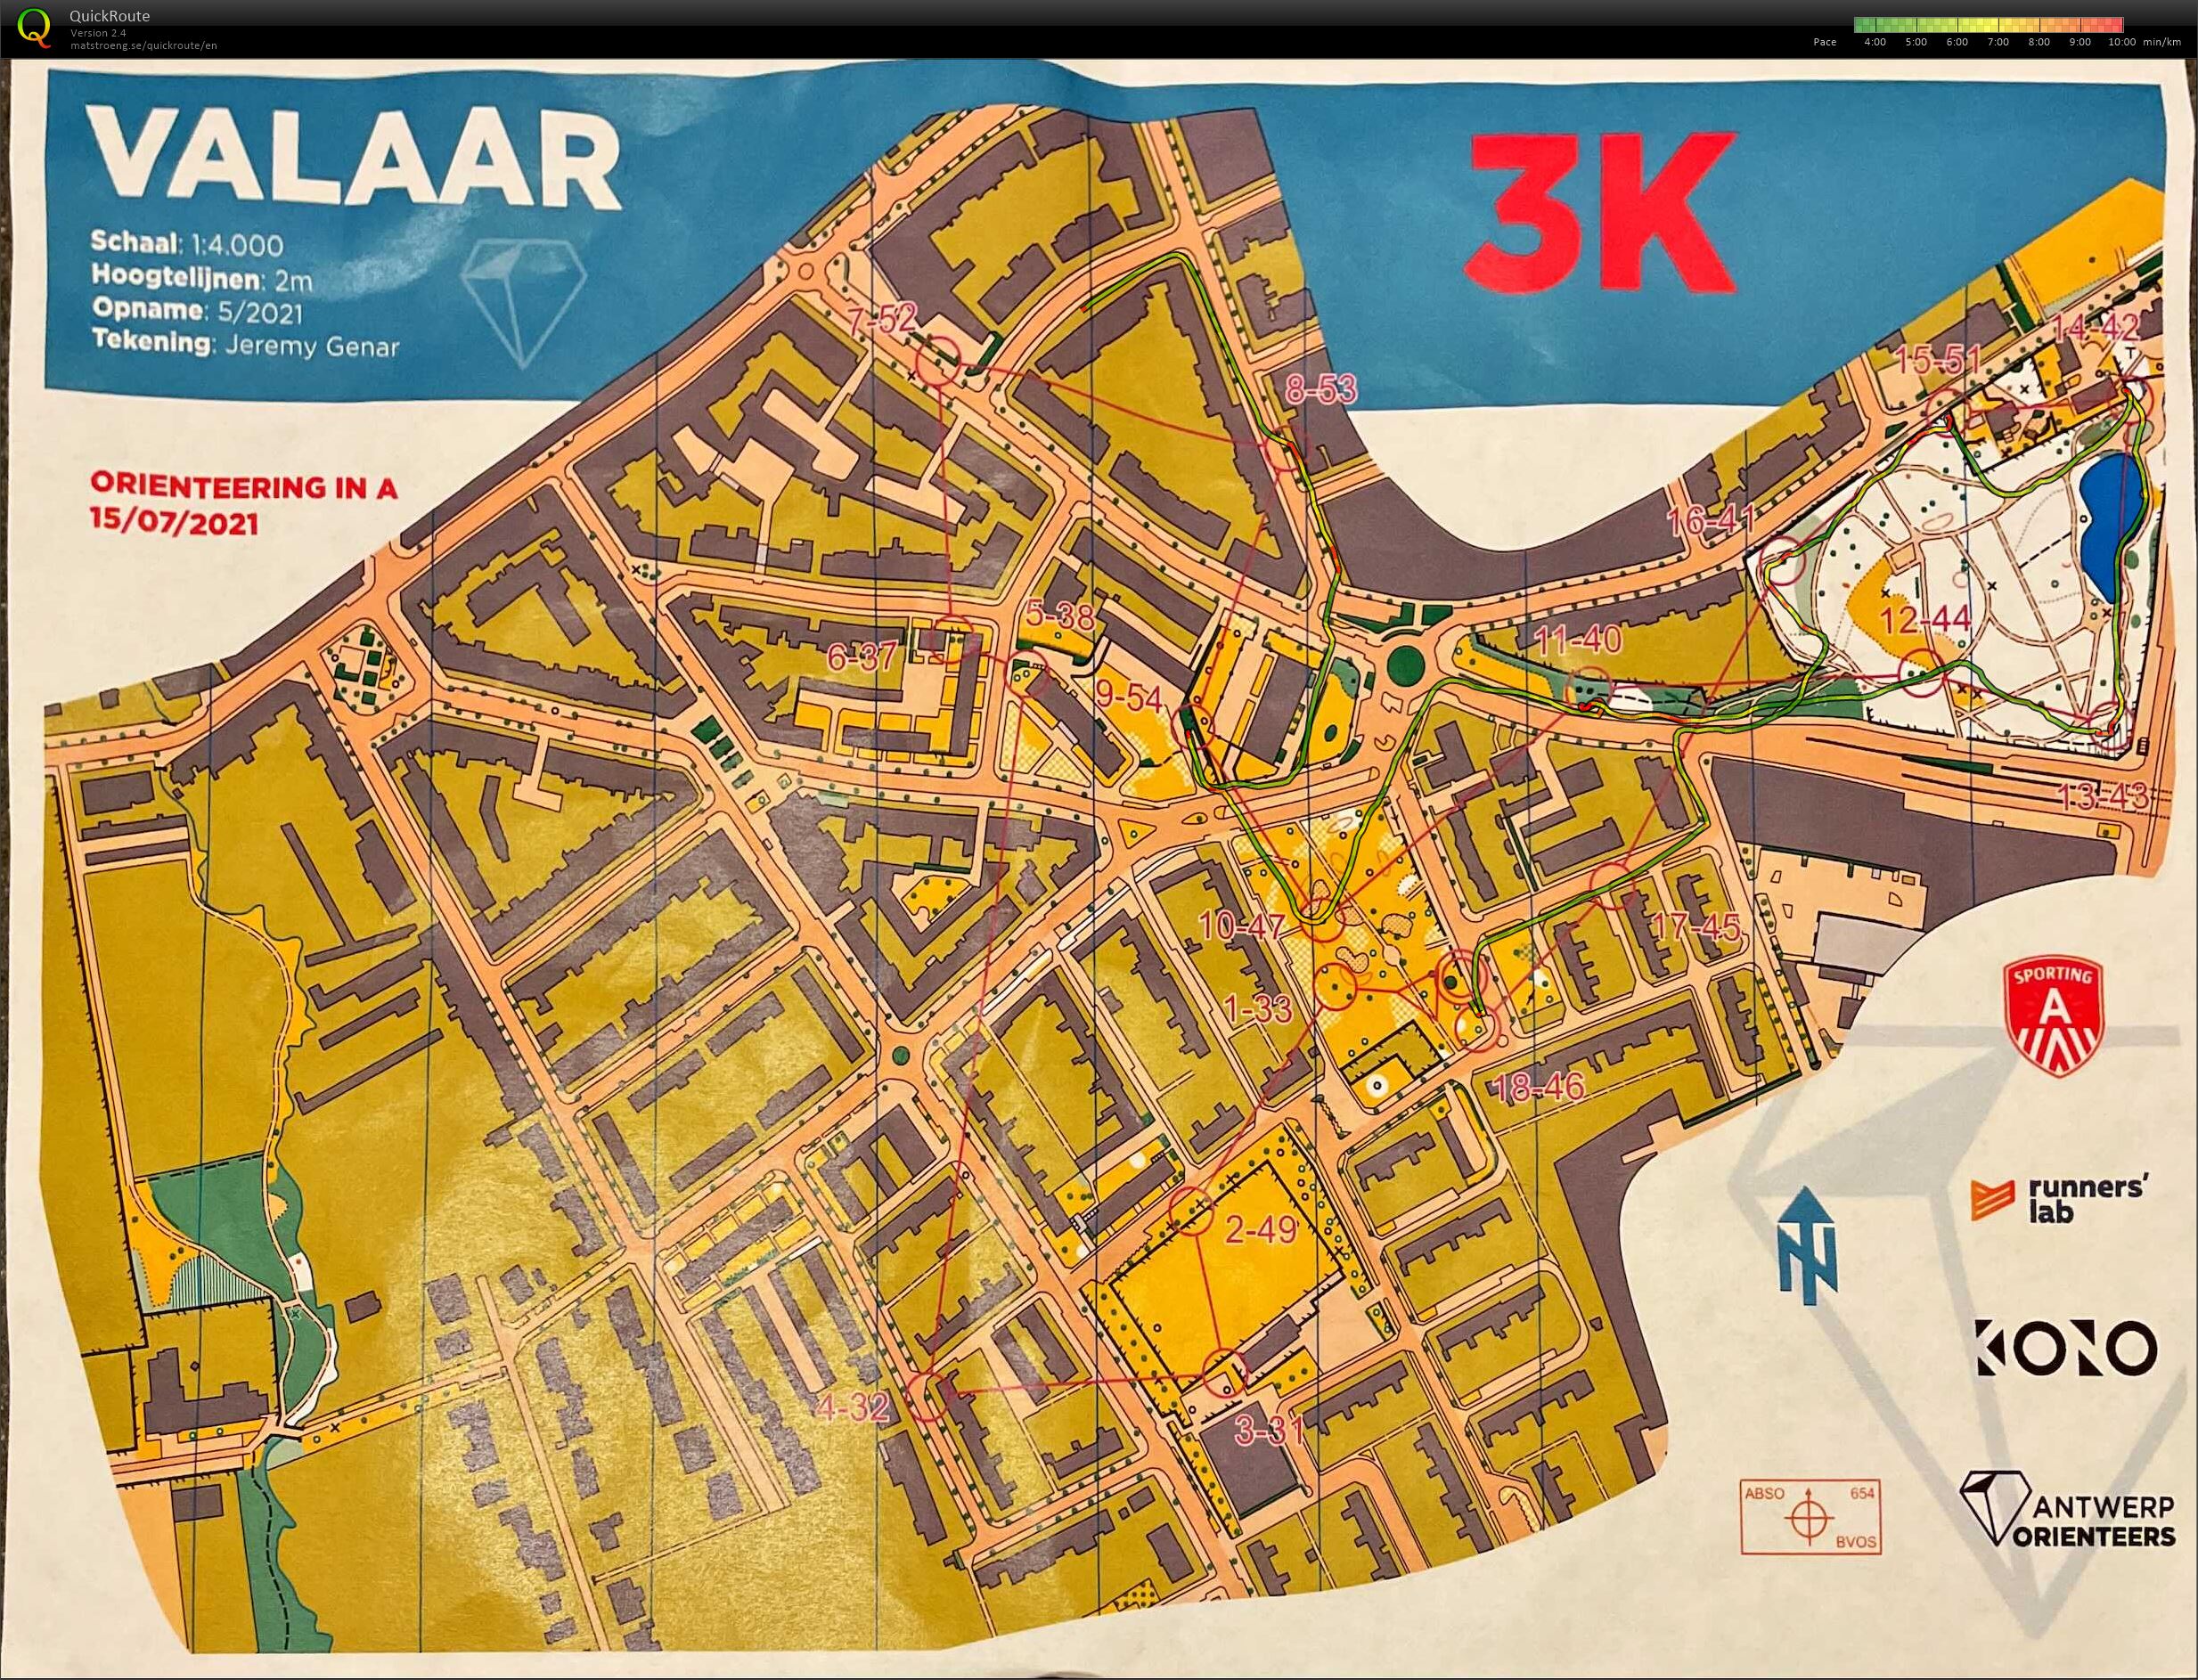 Orienteering in A - Wilrijk Valaar - 3K (2021-07-15)